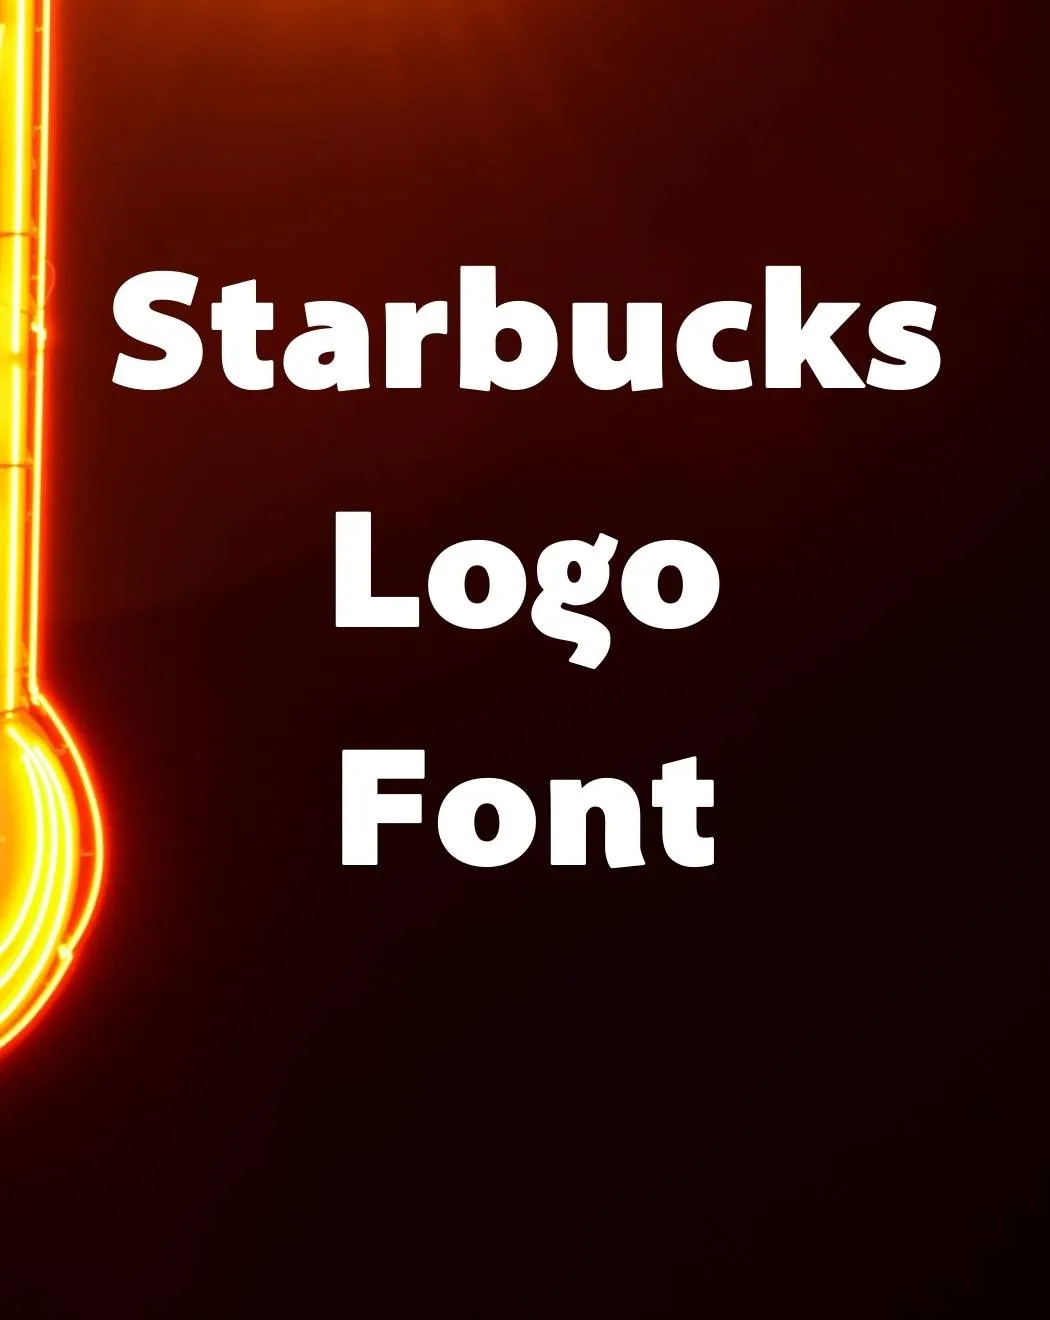 Starbucks Logo Font Free Download